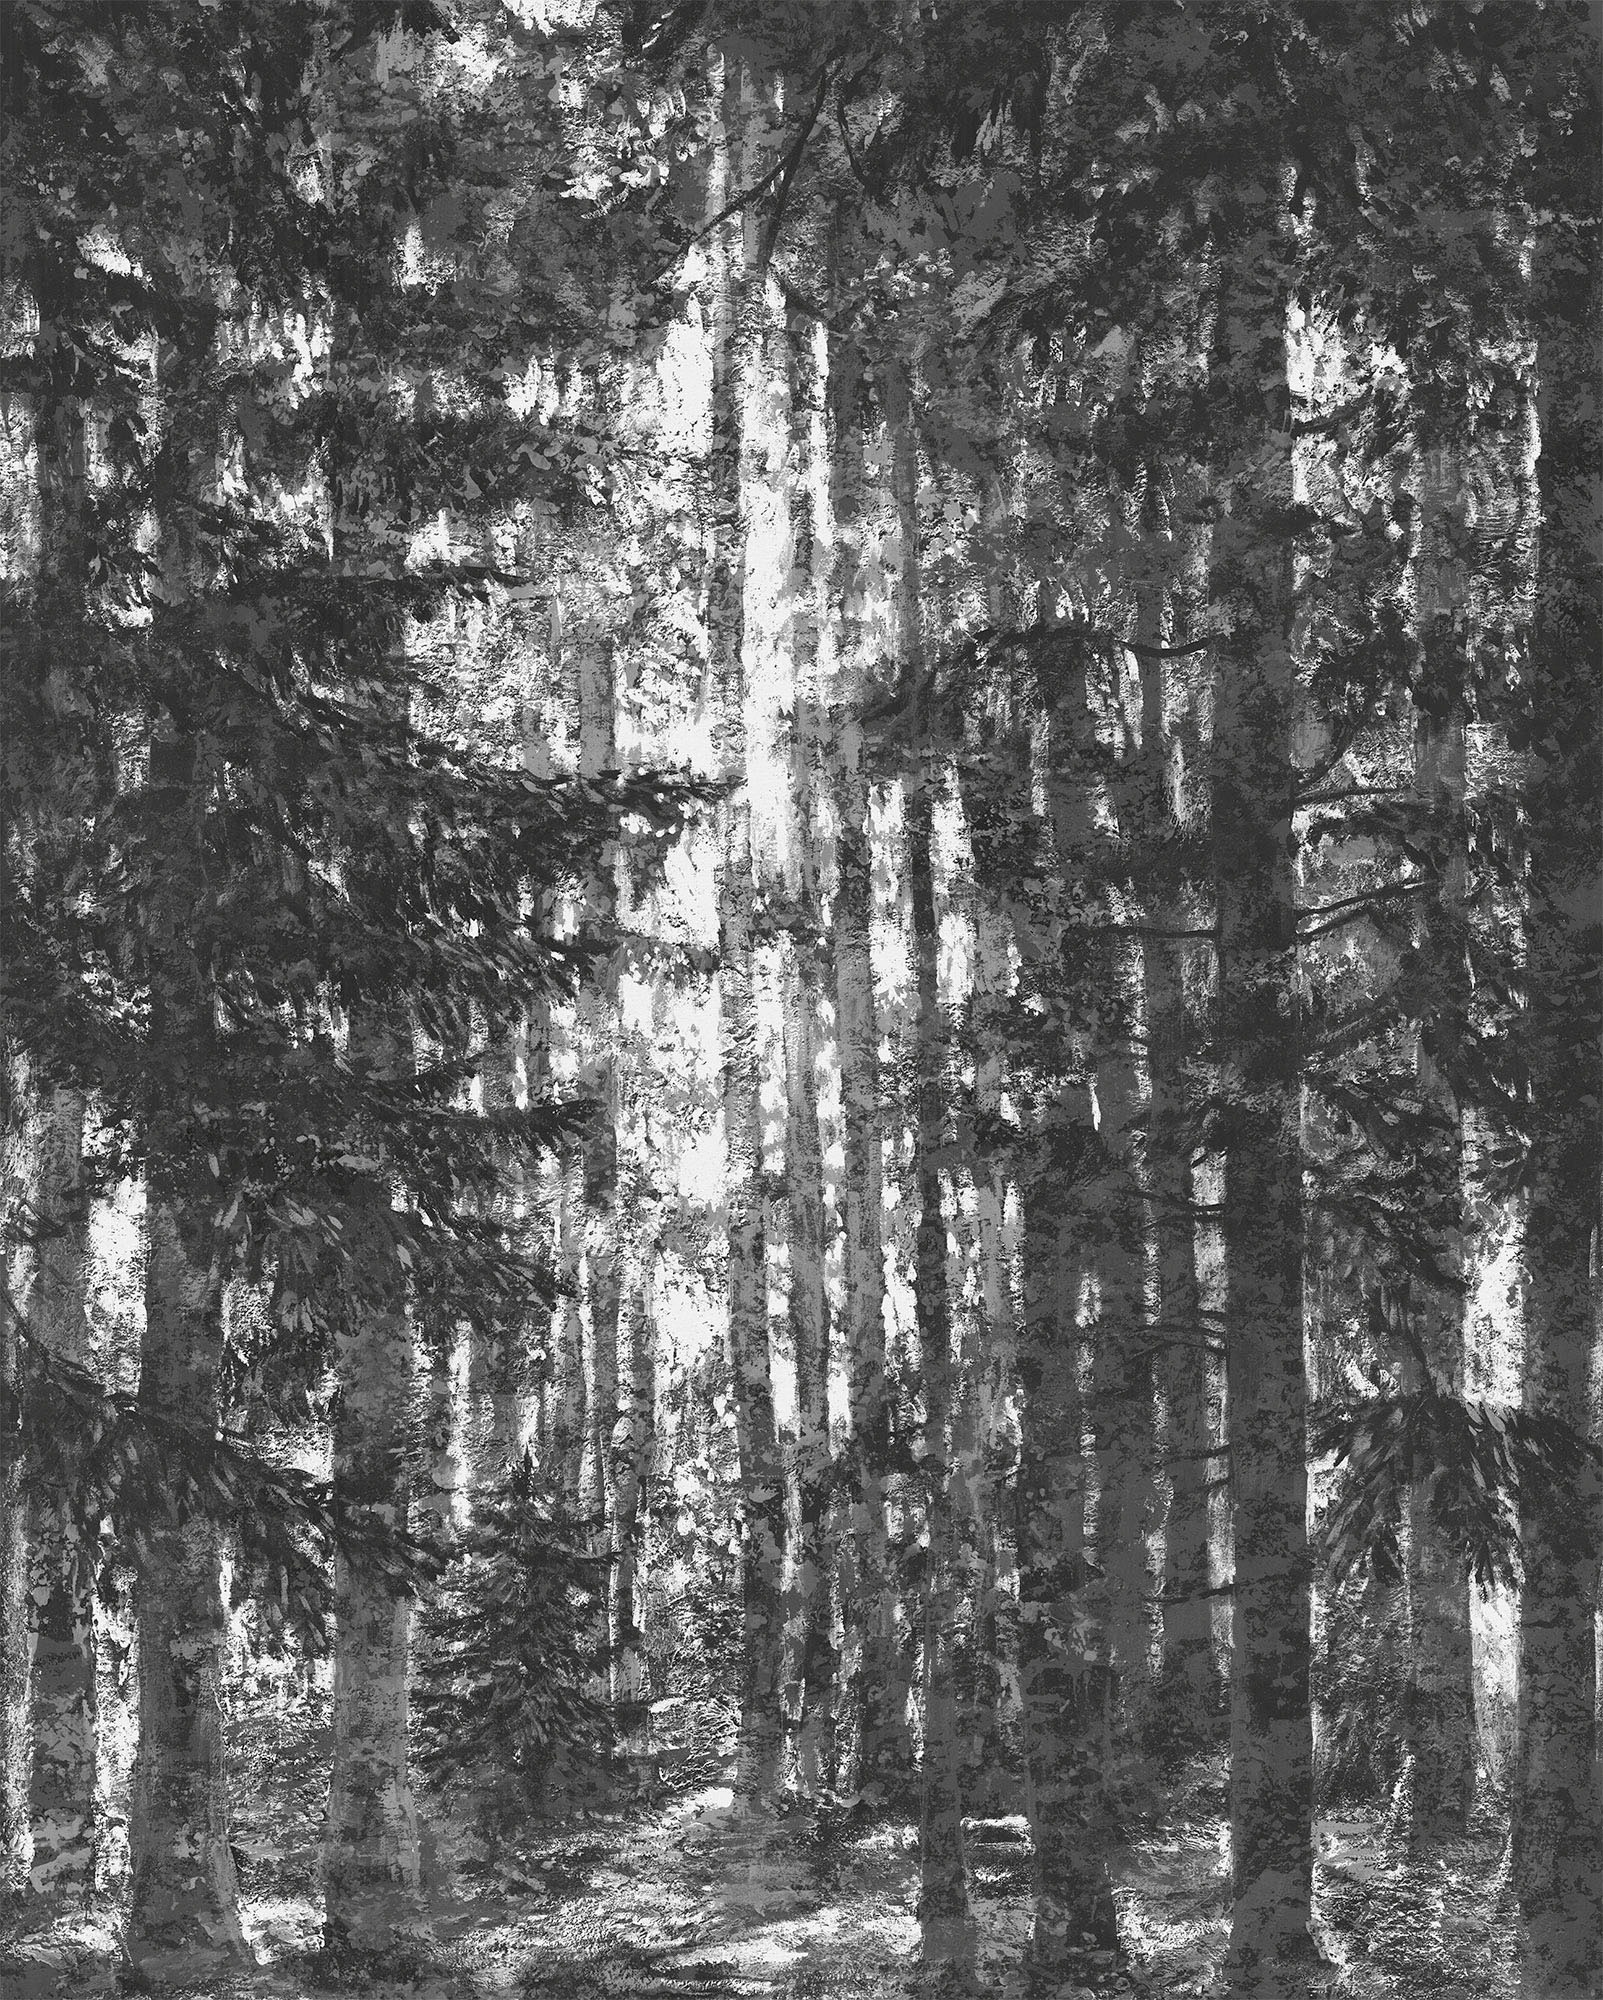 Komar Vliestapete »Lustres Lapland«, 200x250 cm (Breite x Höhe), Vliestapete, 100 cm Bahnbreite